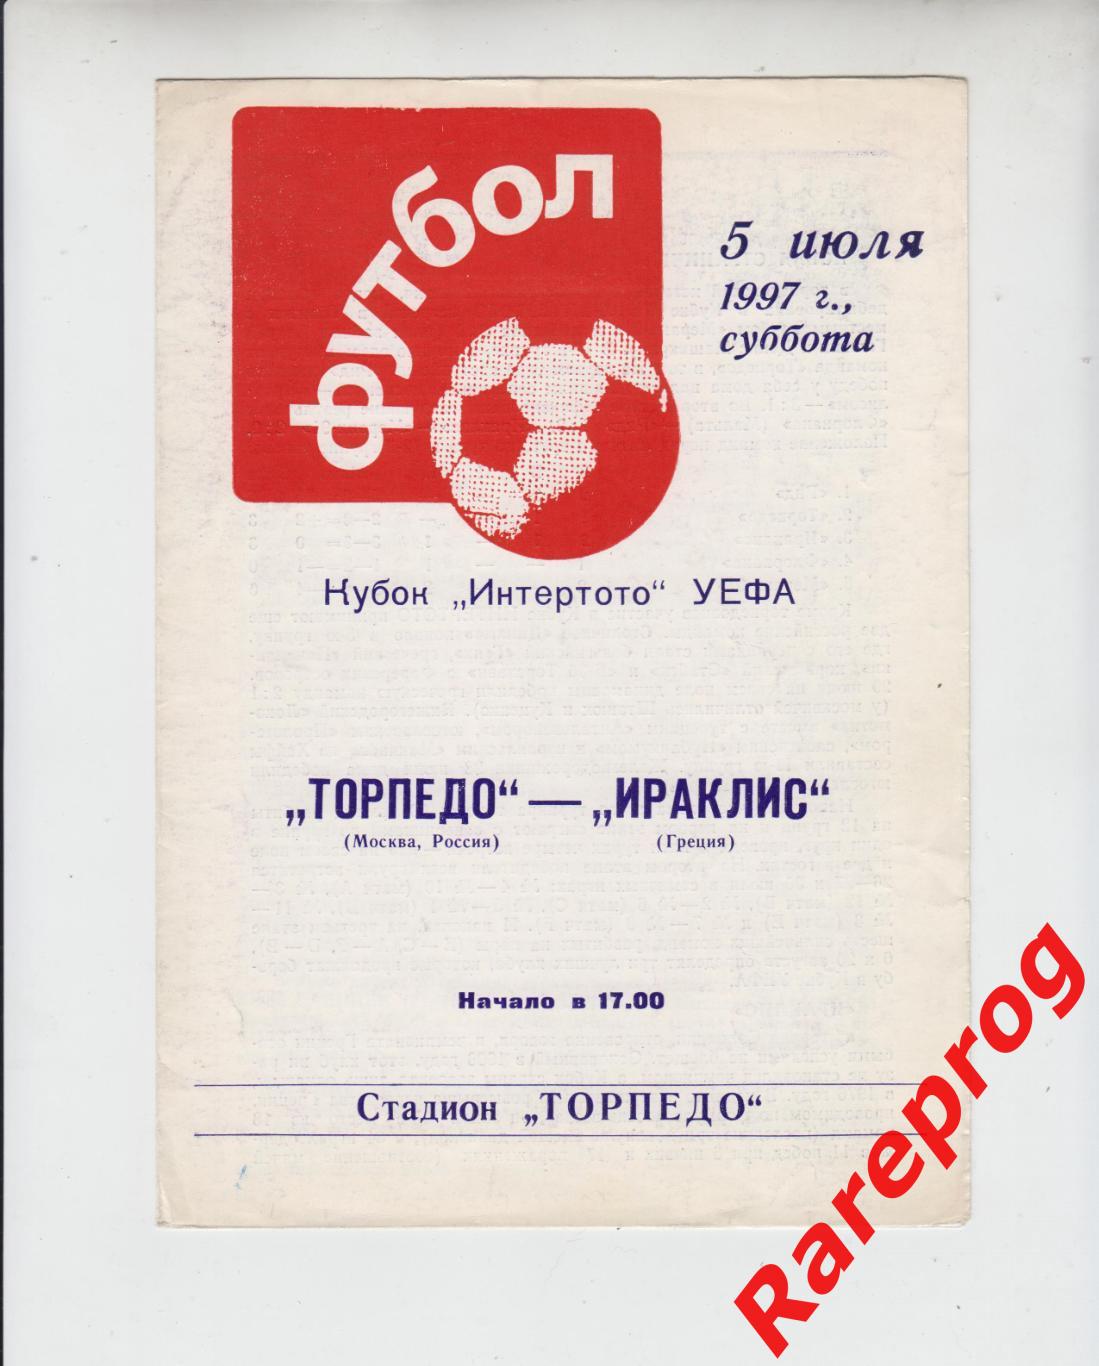 Торпедо Москва Россия - Ираклис Греция 1997 кубок Интертото УЕФА